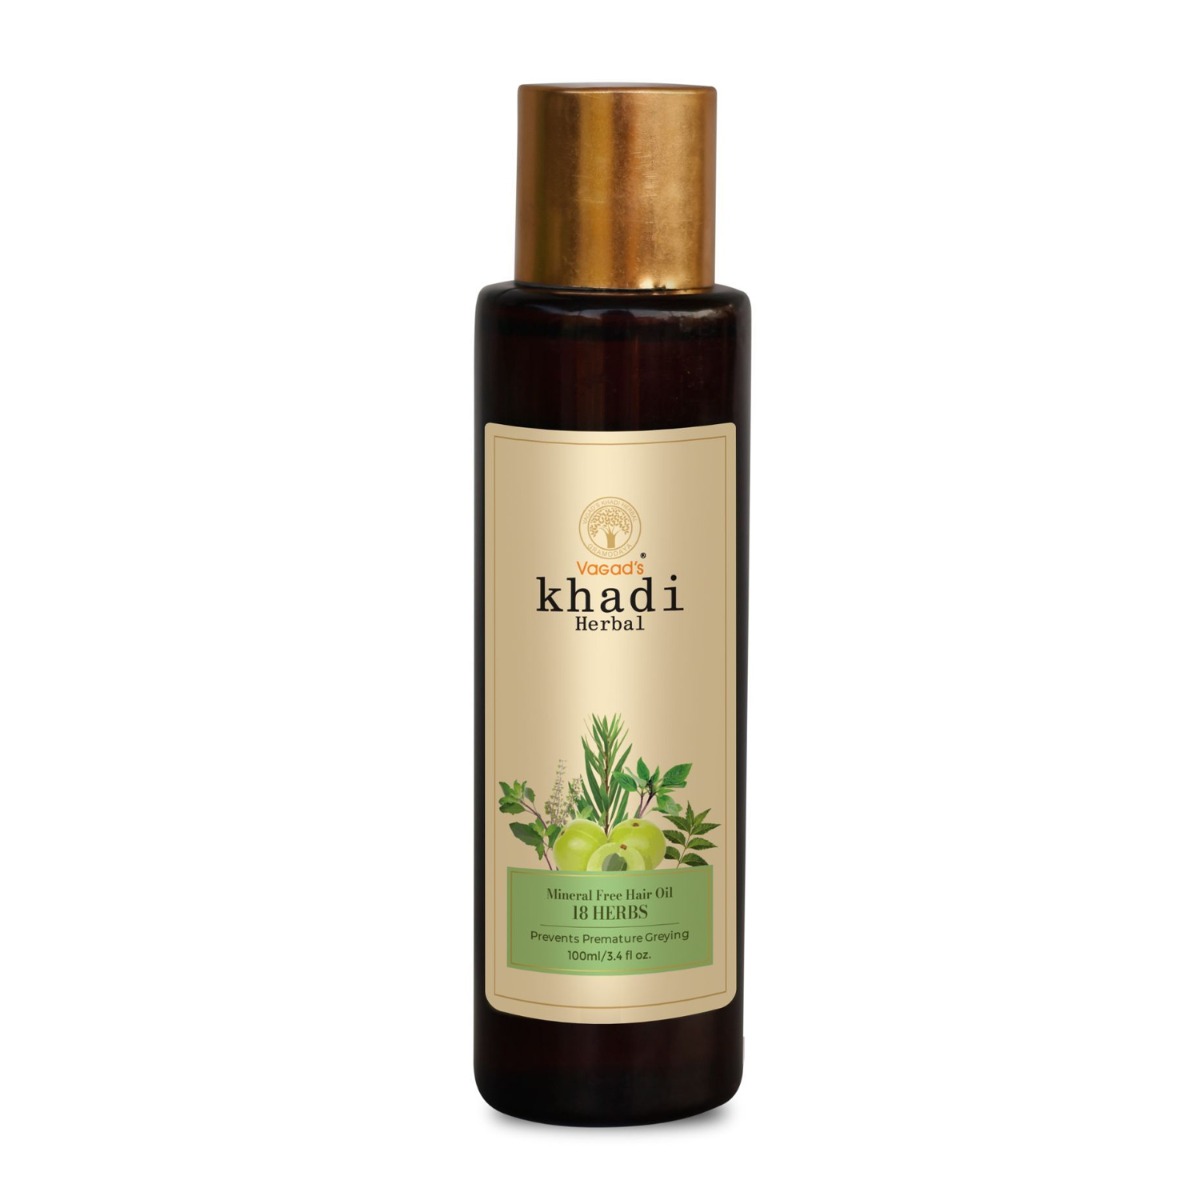 Vagad's Khadi 18-herbs Mineral-free Oil, 100ml